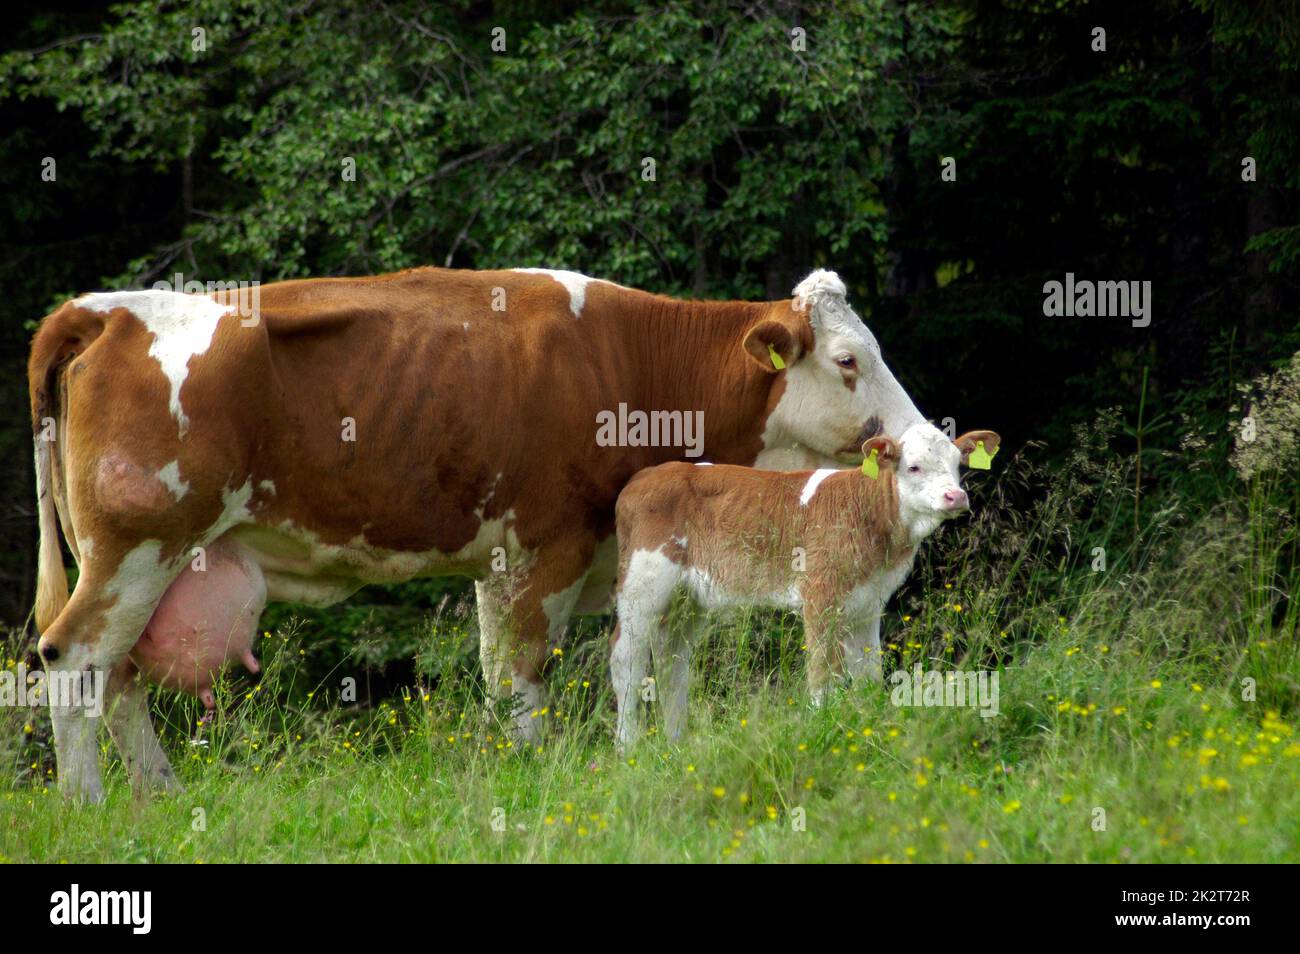 Cría de animales, vacas pastando en un prado verde Foto de stock